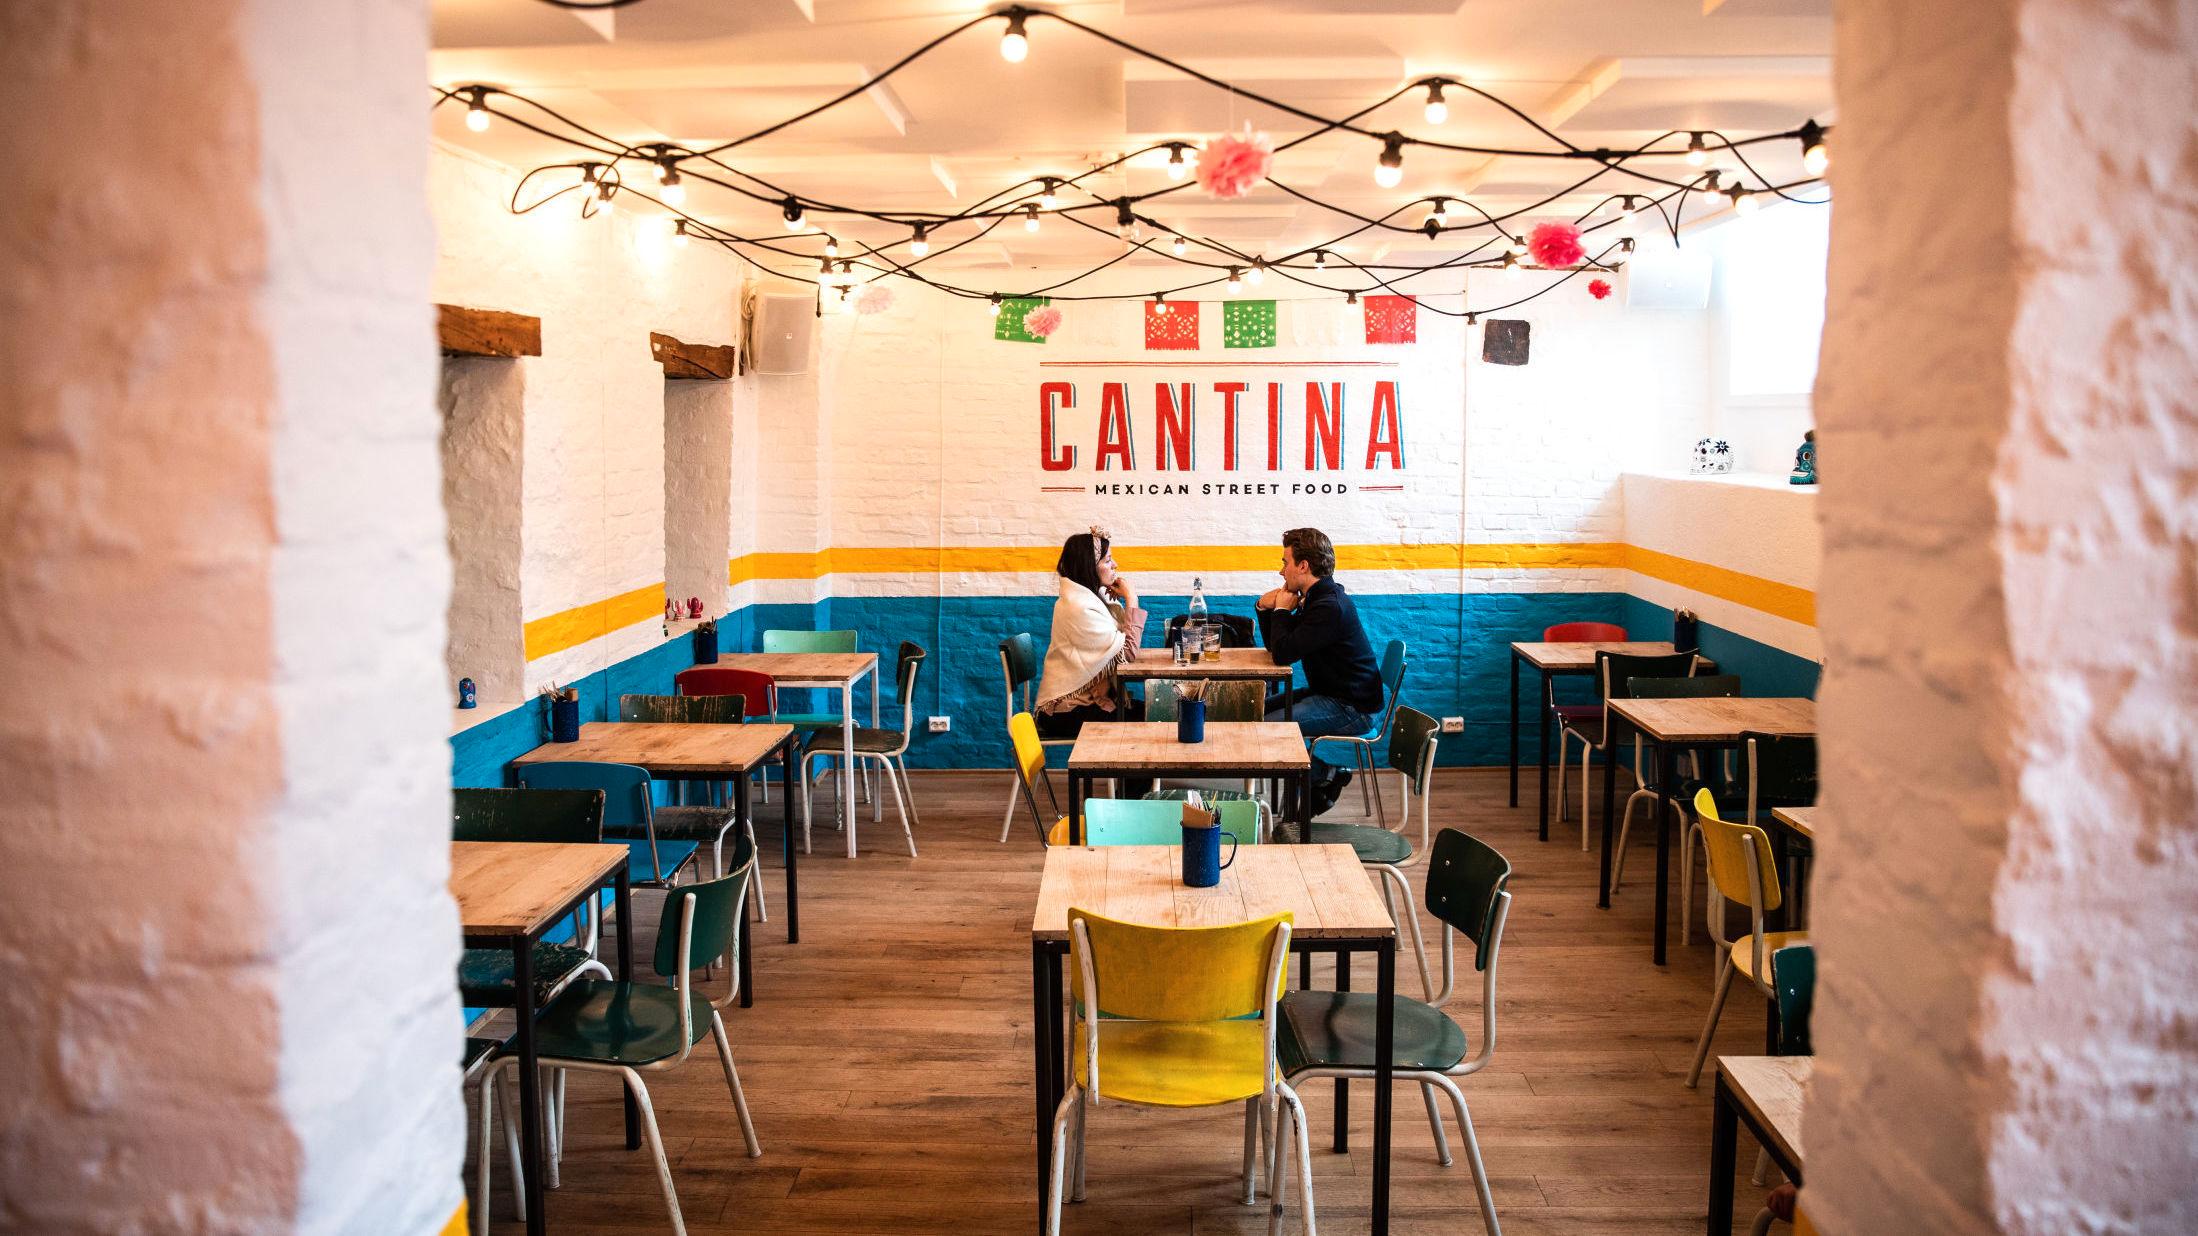 FÆRRA TIL MEXICO: Du trenger ikke dra så langt for å nyte autentisk, meksikansk gatemat. Foto: Hallgeir Vågenes/VG